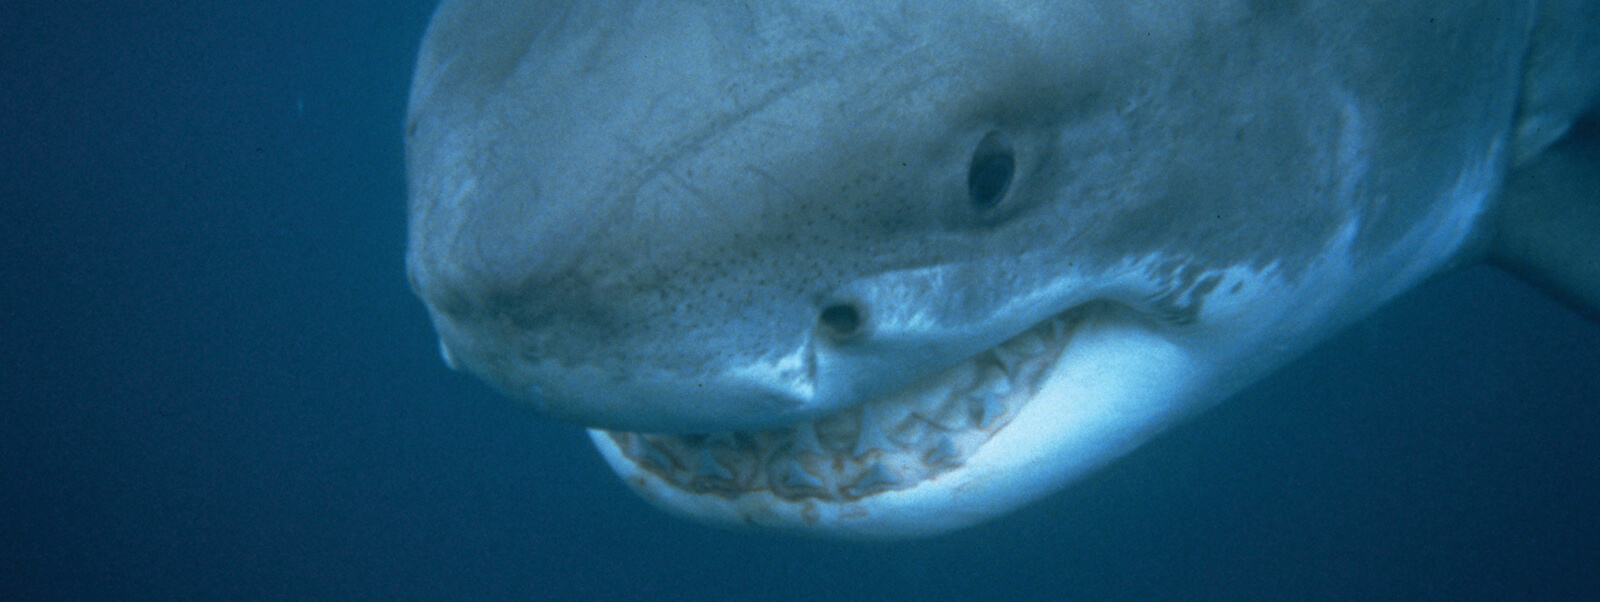 The head of a shark